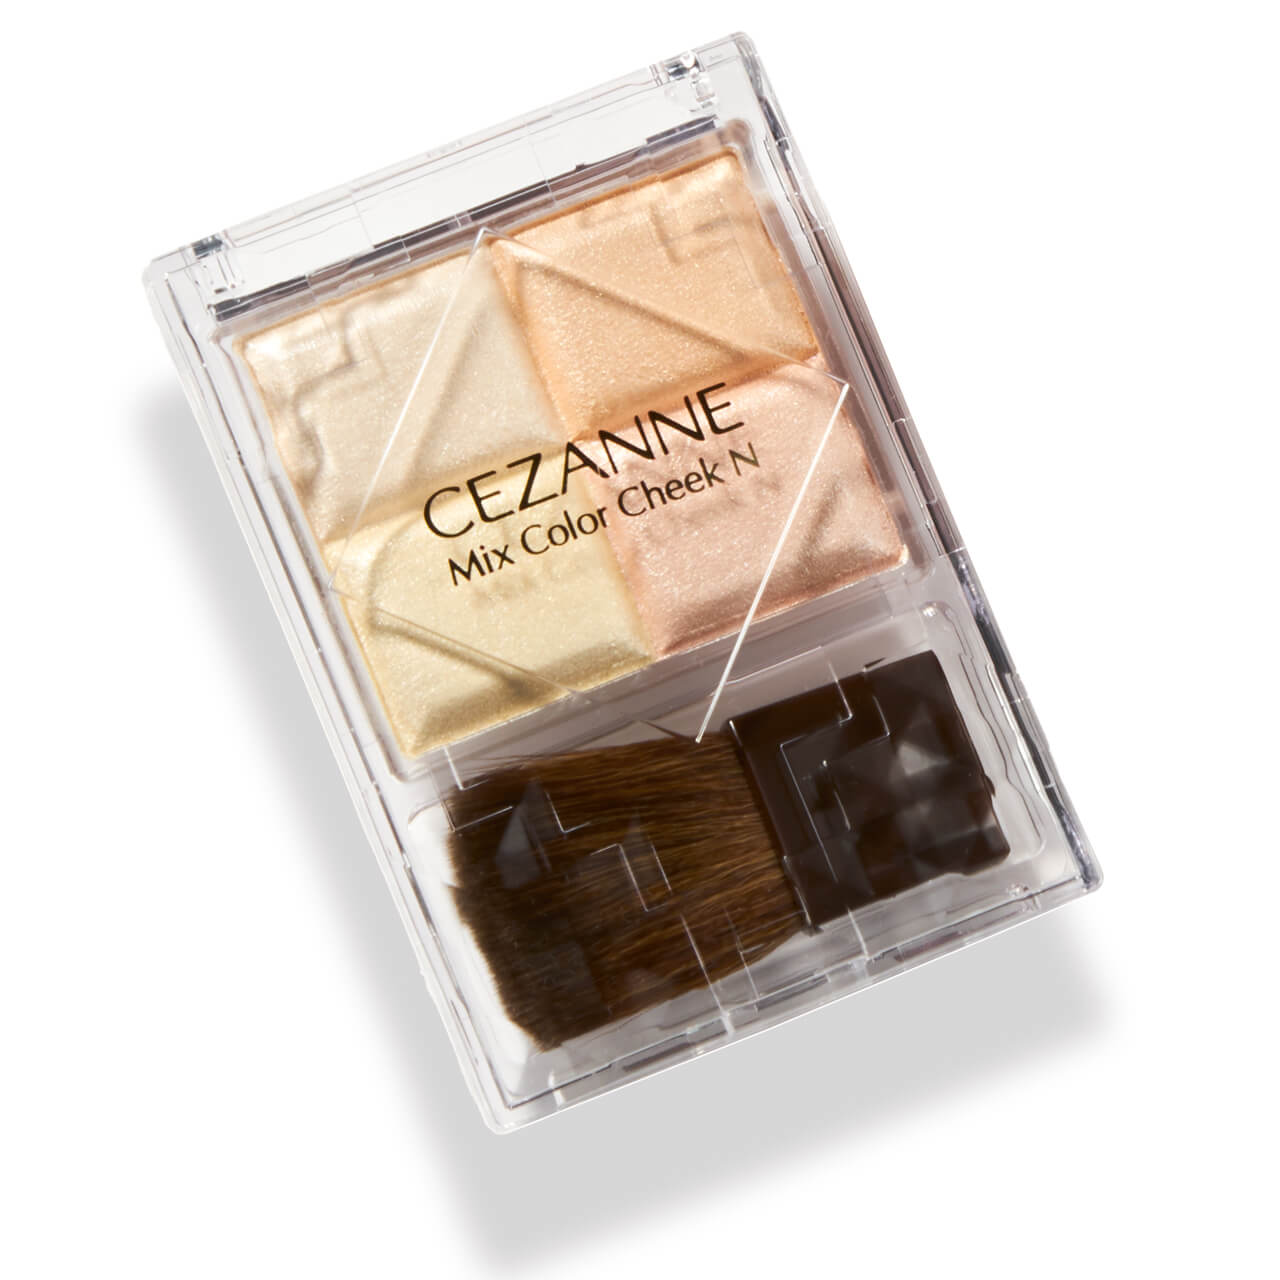 CEZANNE セザンヌ ミックスカラーチークN 10 ¥748／セザンヌ化粧品（9月6日発売）